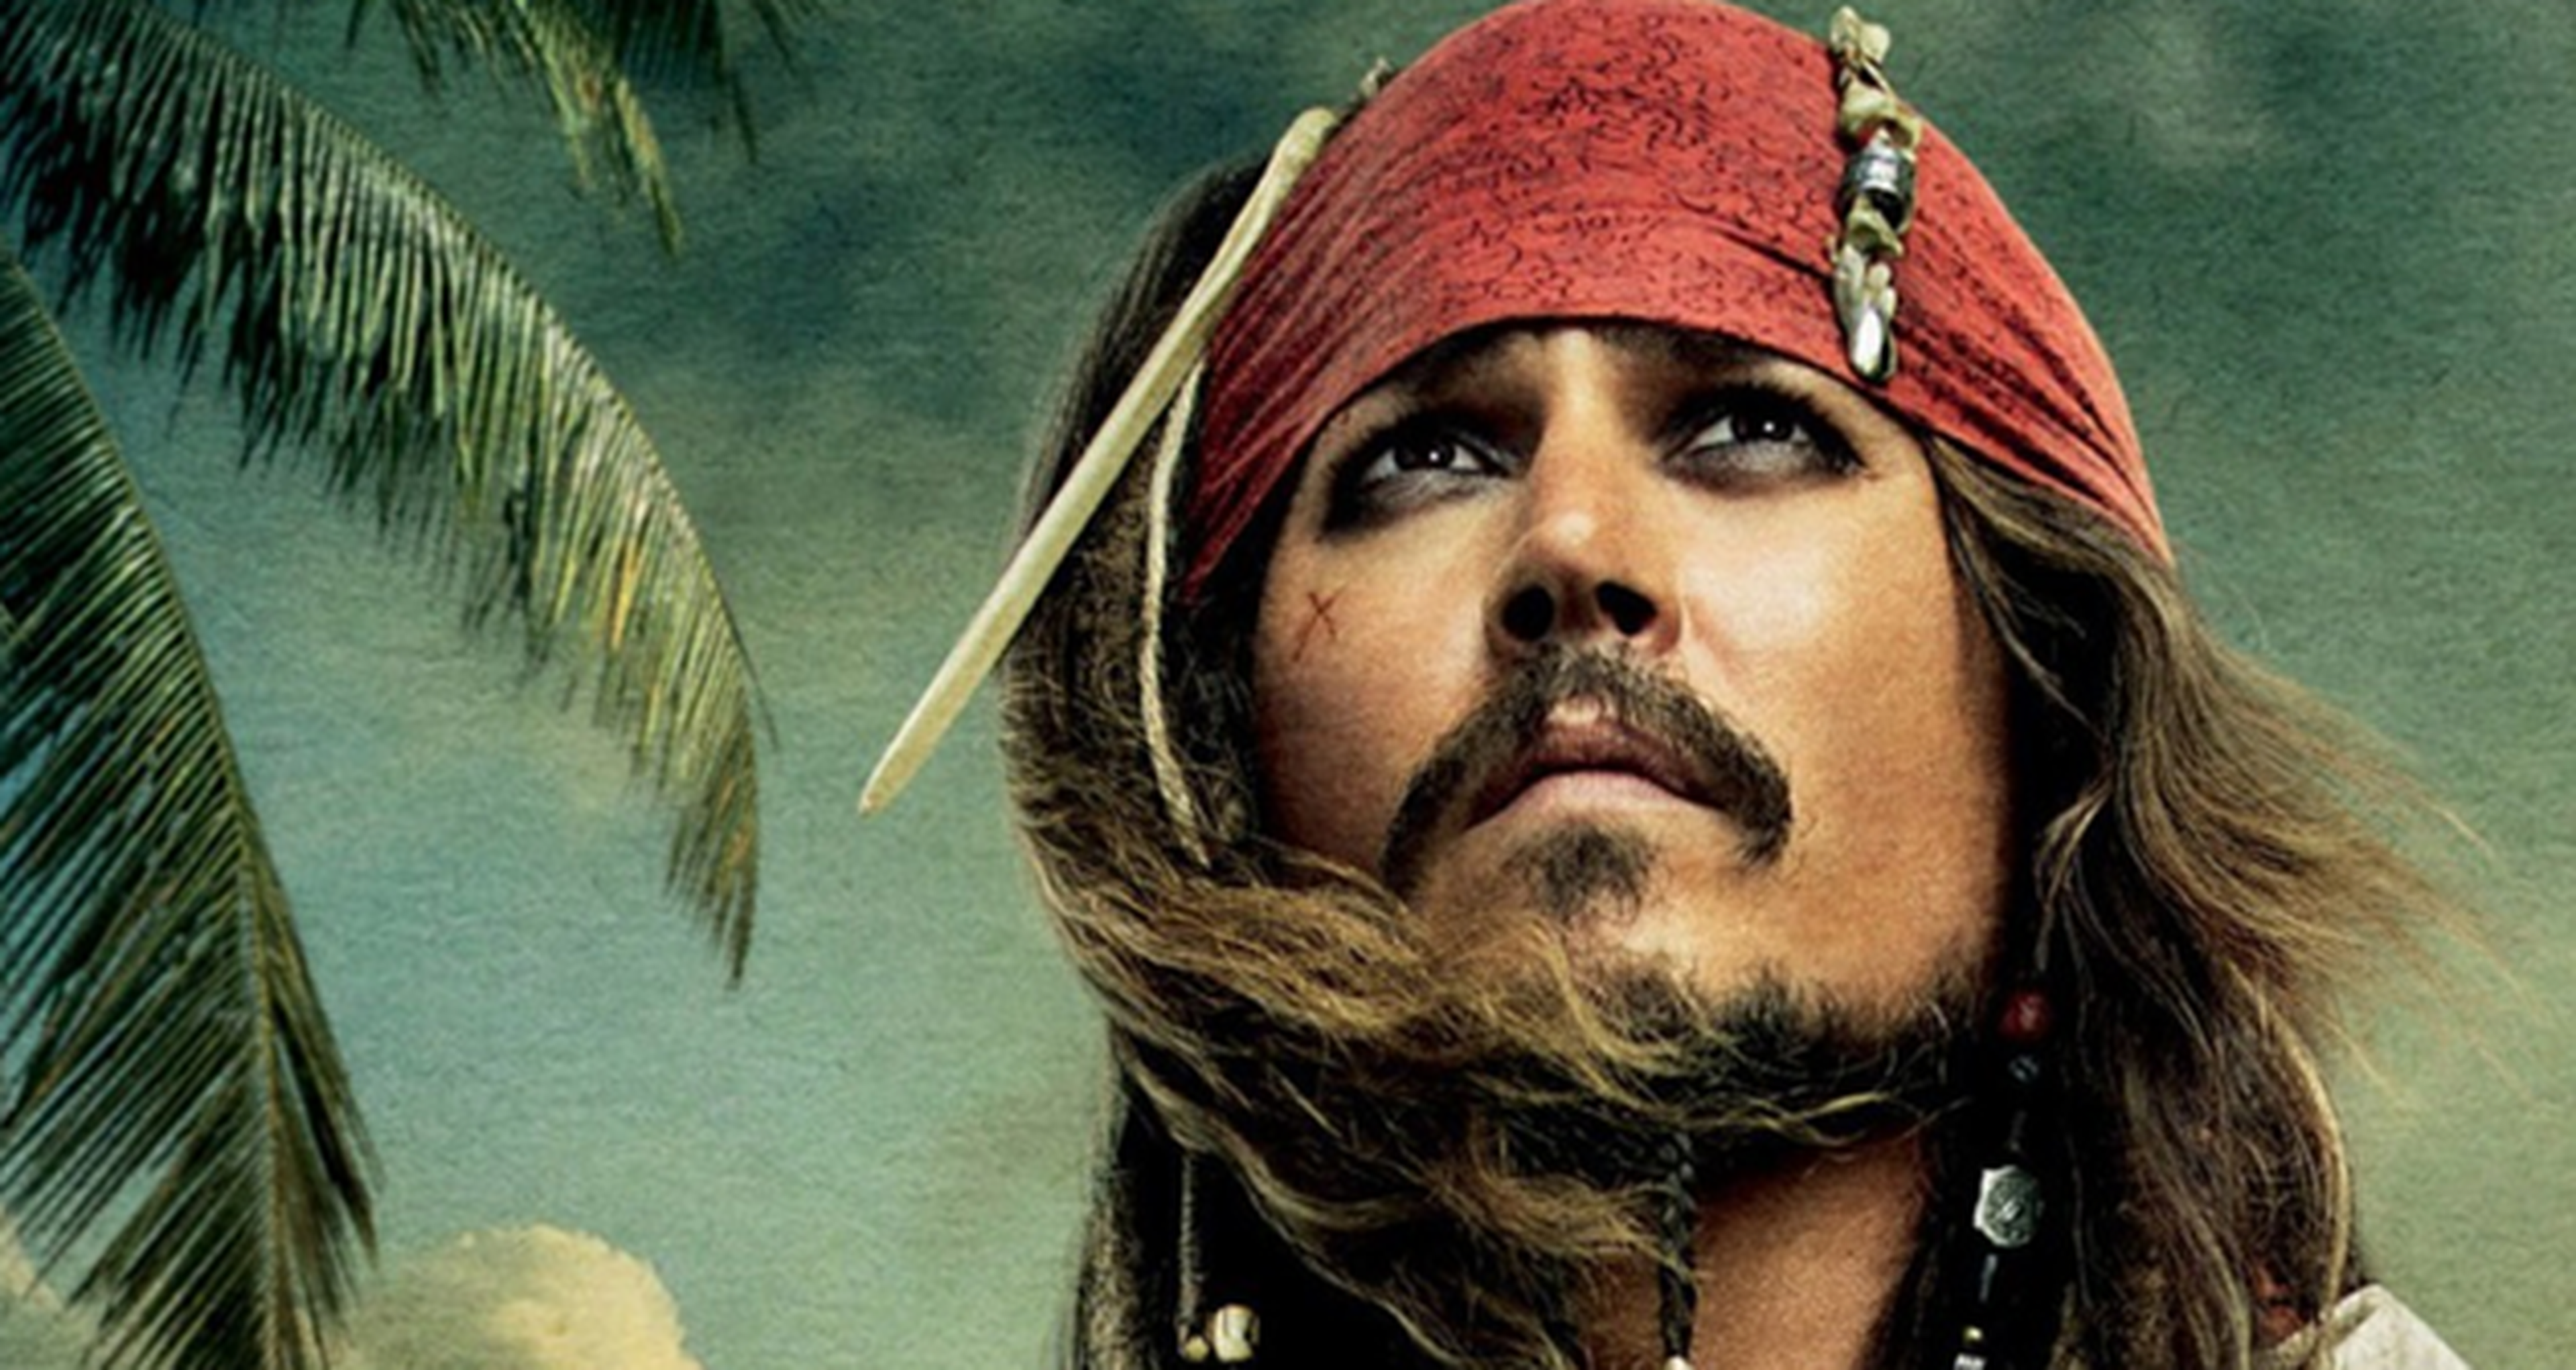 Piratas del Caribe 5 ya tiene título oficial